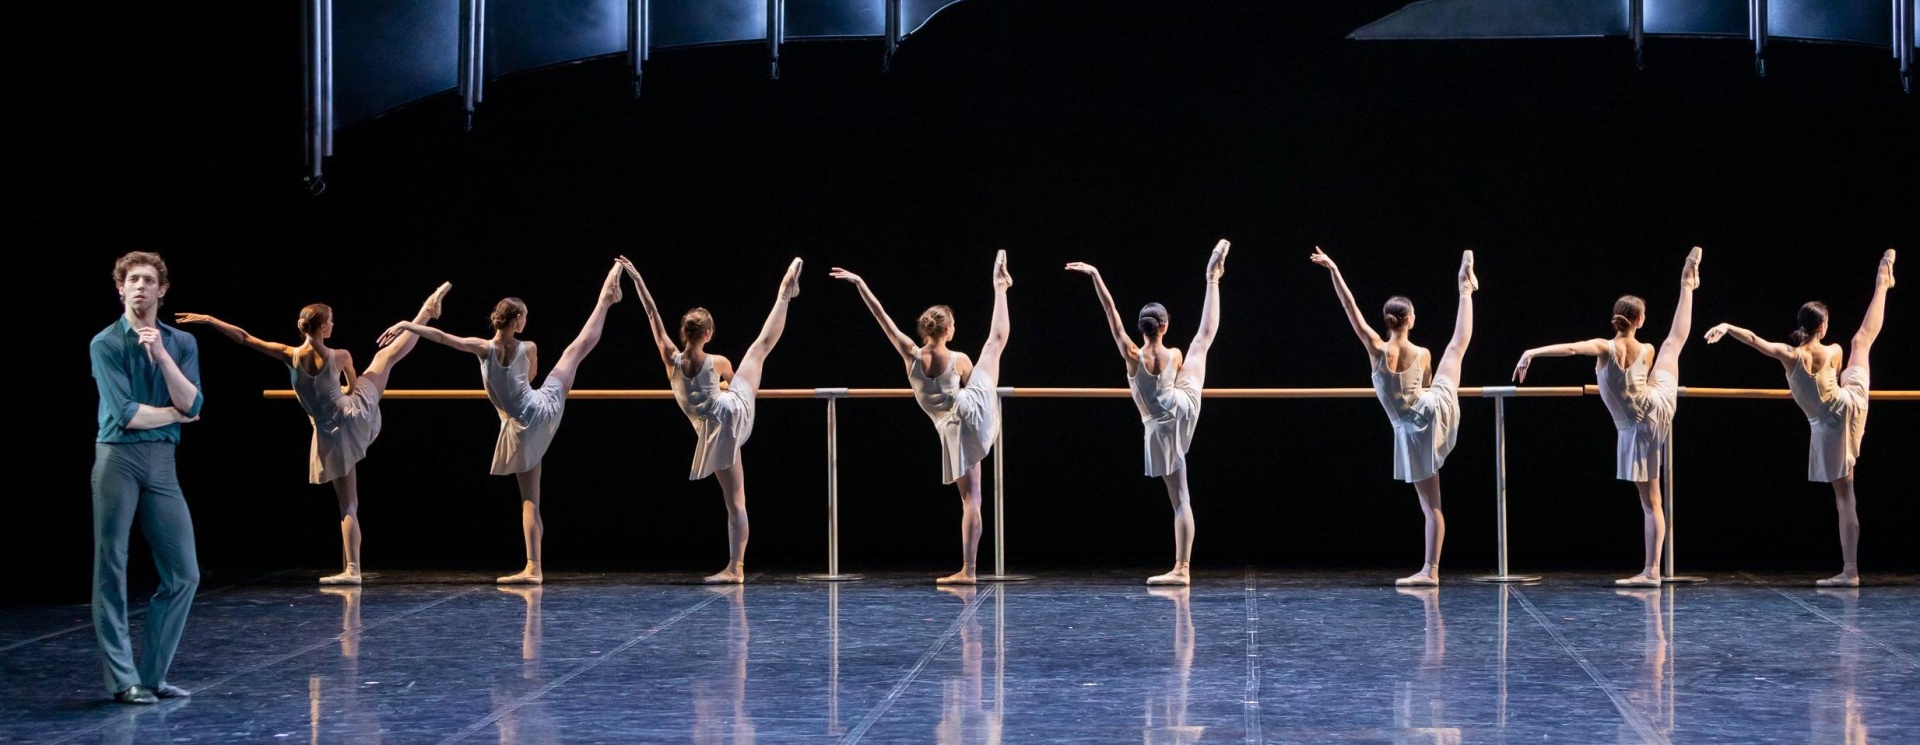 Выпускной концерт Академии танца Бориса Эйфмана пройдет на основной сцене Александринского театра